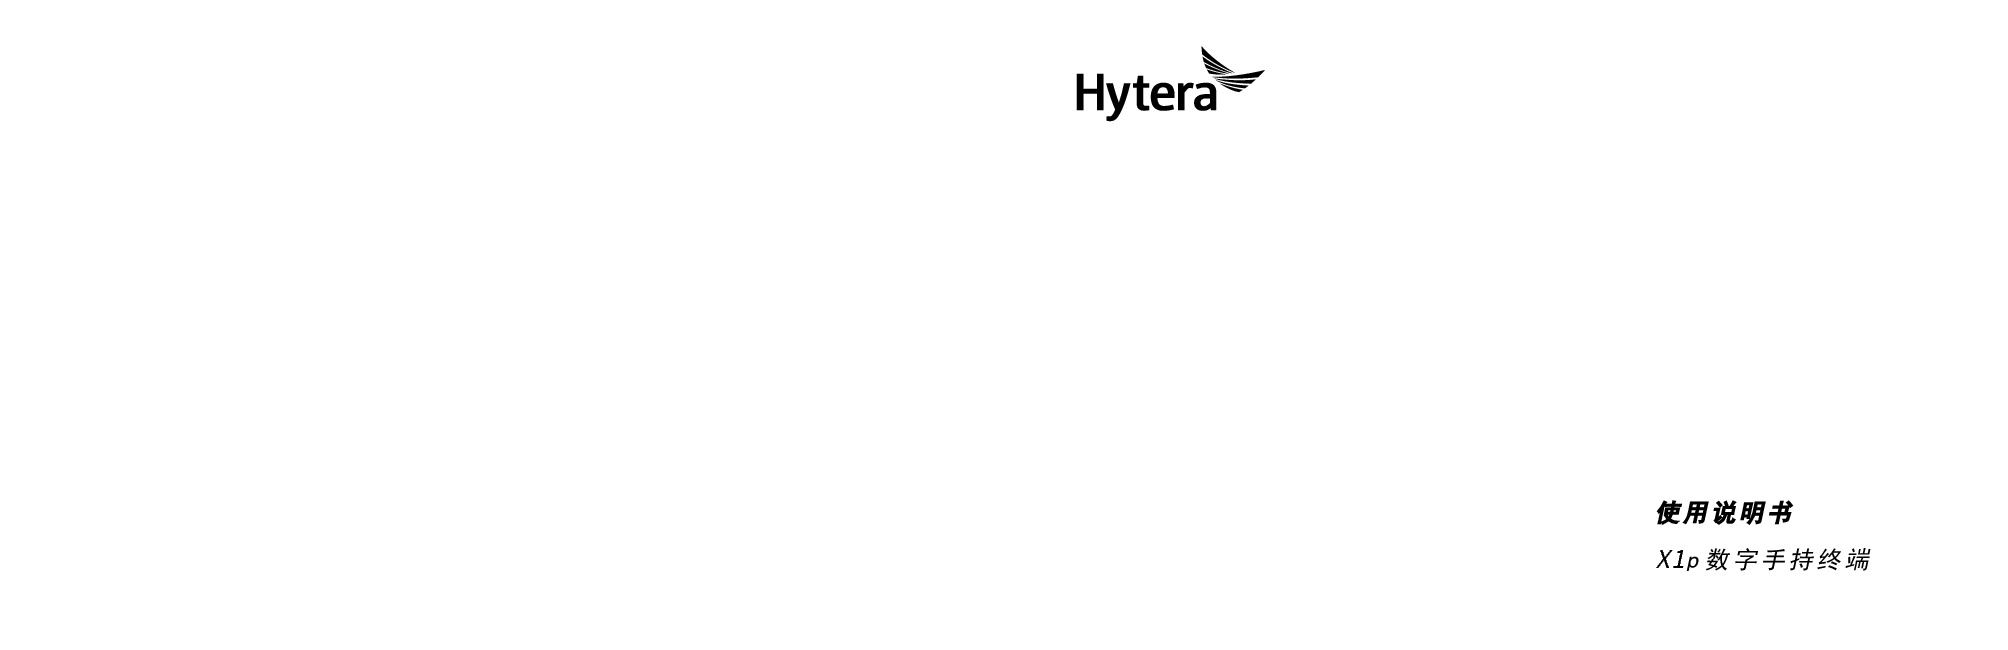 海能达 Hytera X1p R8.5 使用说明书 封面